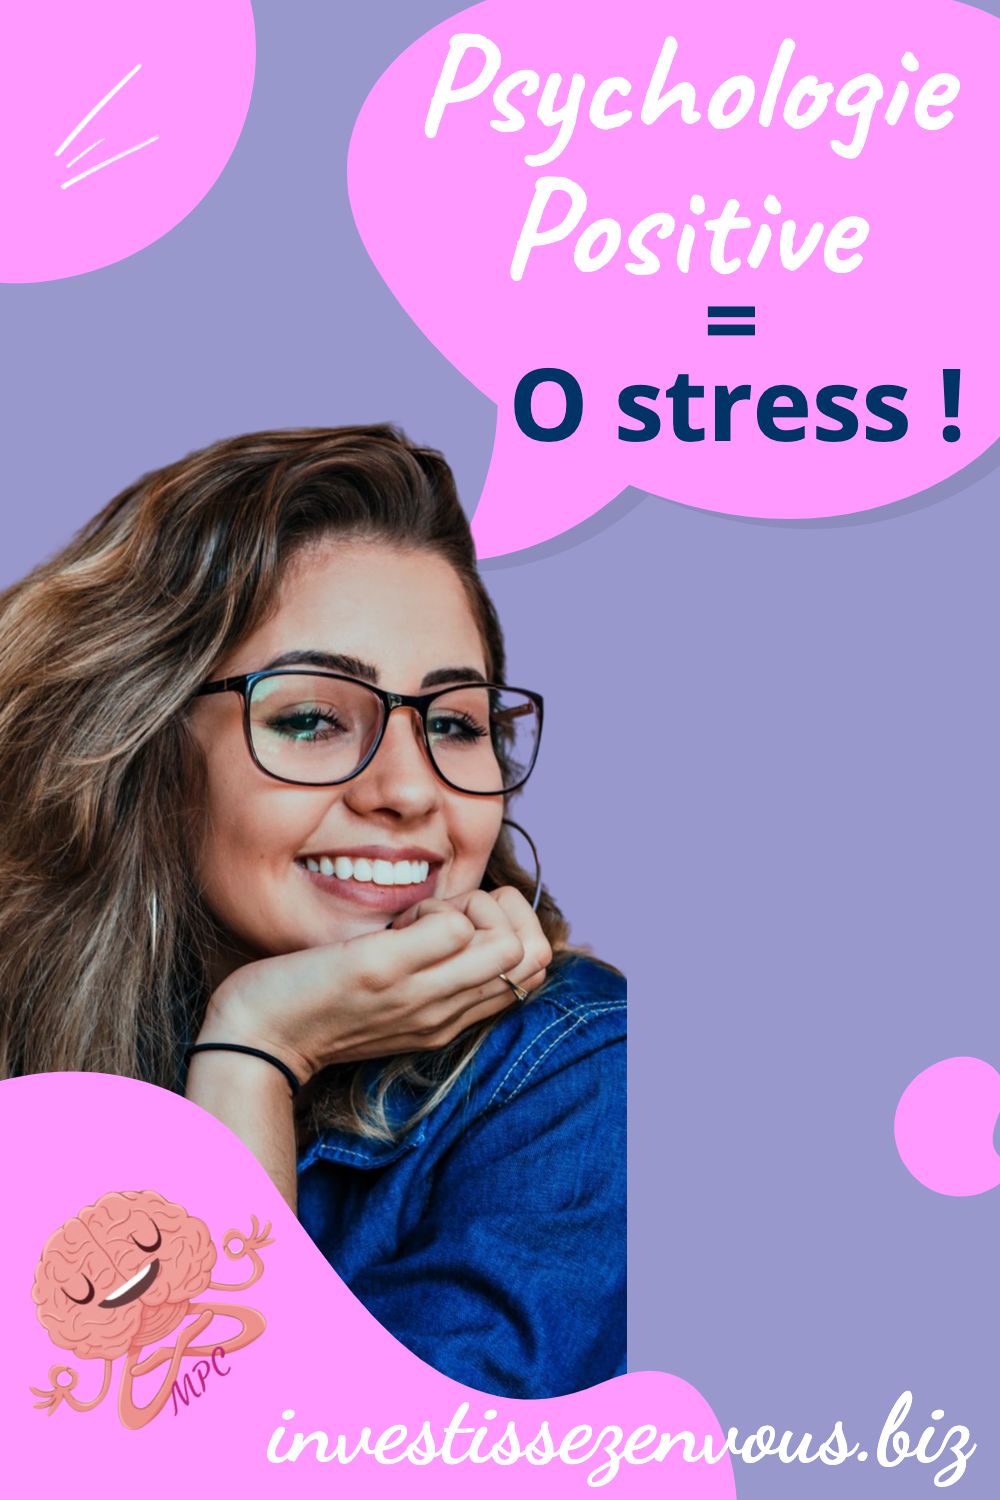 psychologie positive = 0 stress